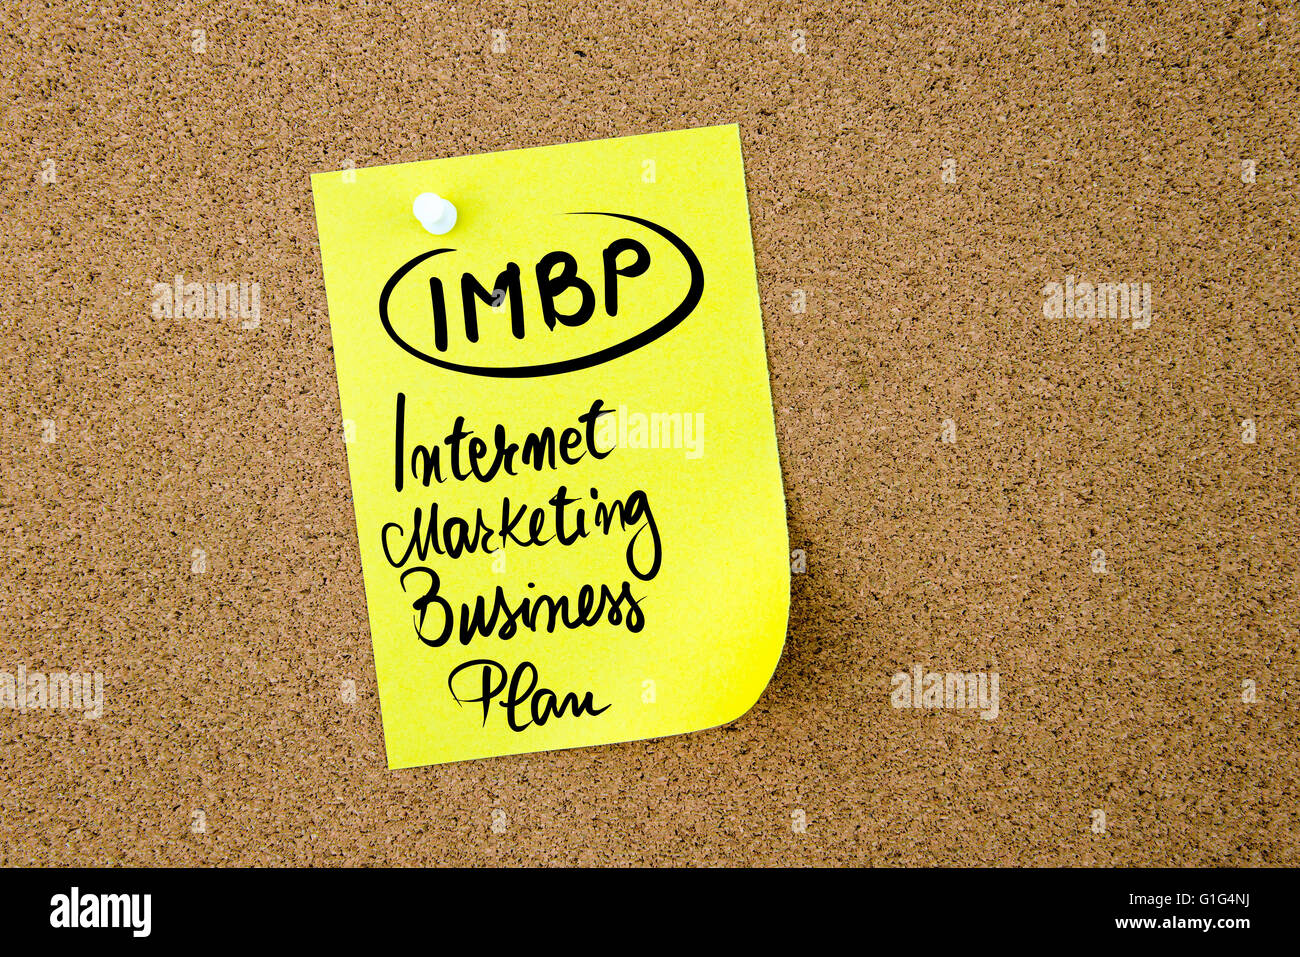 Acrónimo IMBP negocios Internet Marketing Plan de negocio escritas en papel amarillo nota fijada en tablero de corcho blanco con chincheta, copie el espacio disponible Foto de stock